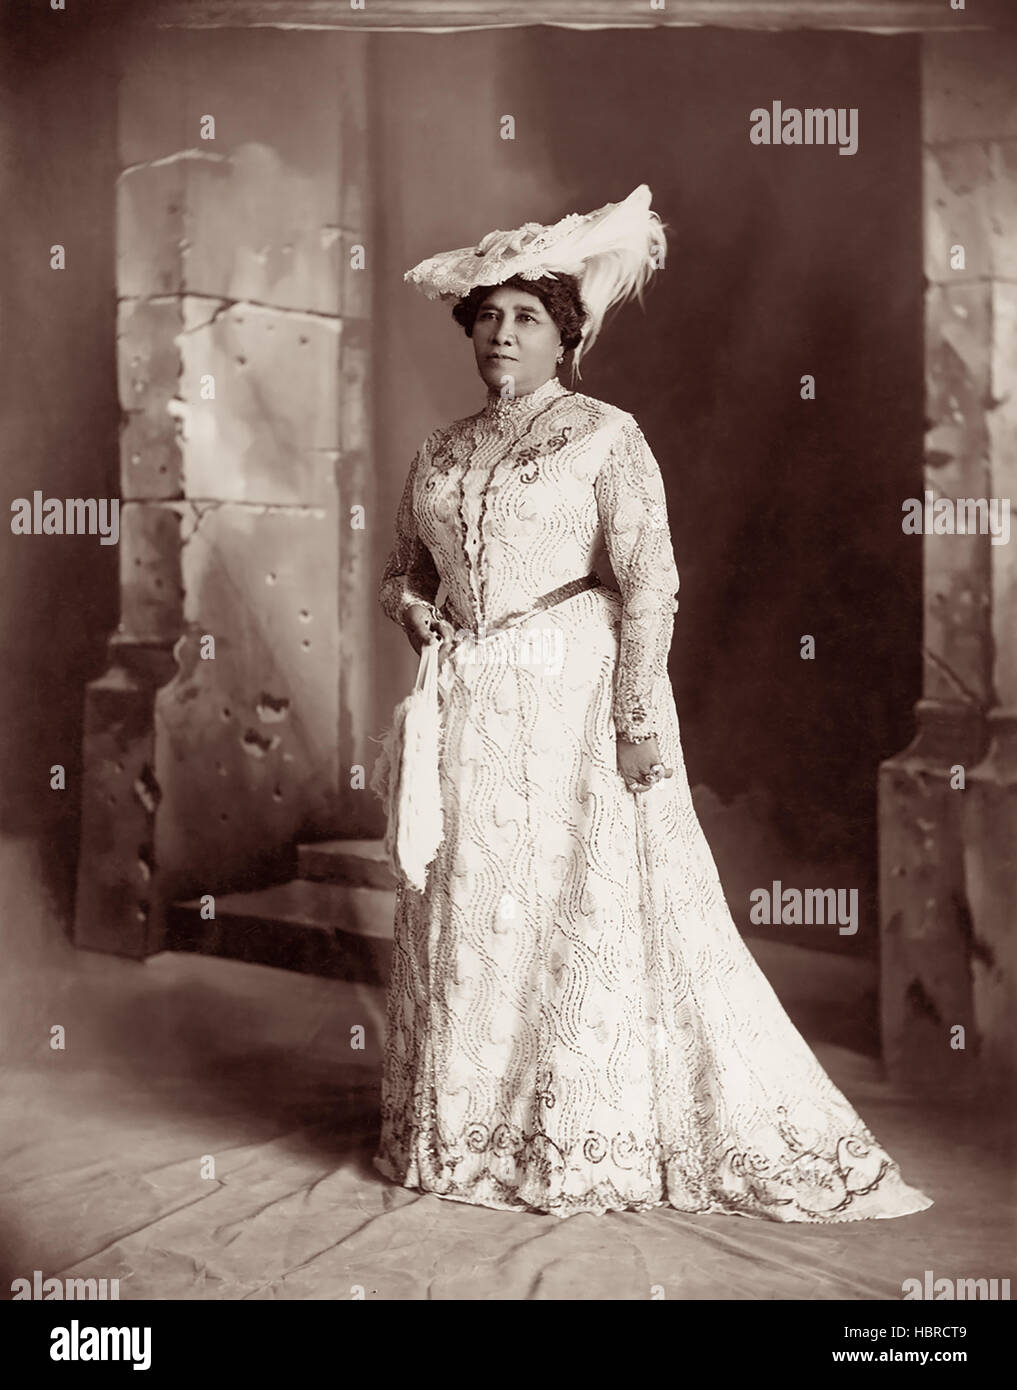 Königin Liliuokalani (1838-1917) war die erste Königin und letzte souveräne Herrscher des Königreichs Hawaii.  Sie regierte von 1891 bis 1893, als die Monarchie gestürzt wurde. (Foto von Davey) Stockfoto